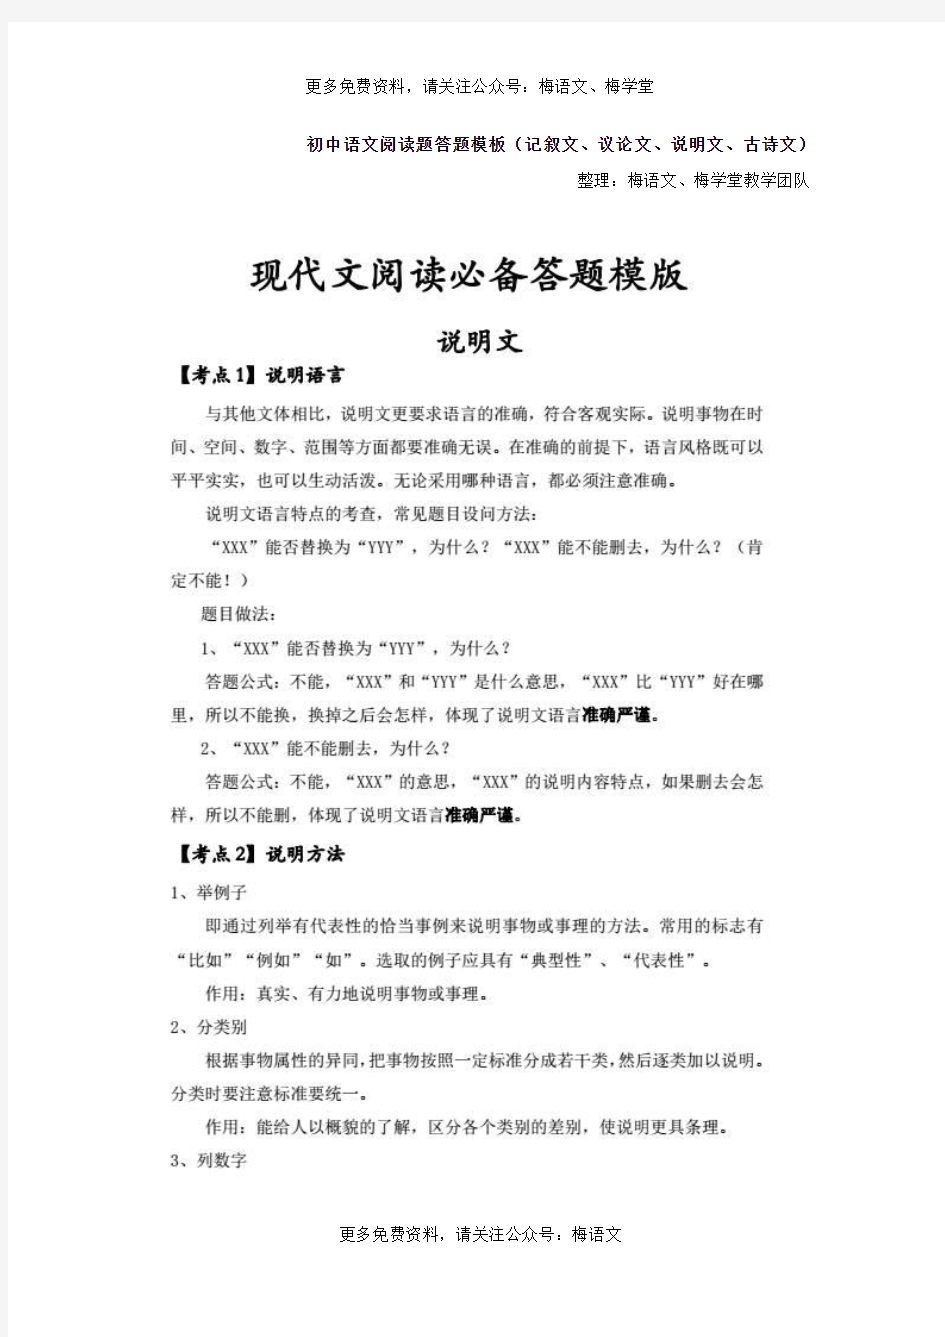 初中语文阅读题答题模板(记叙文、议论文、说明文、古诗文)